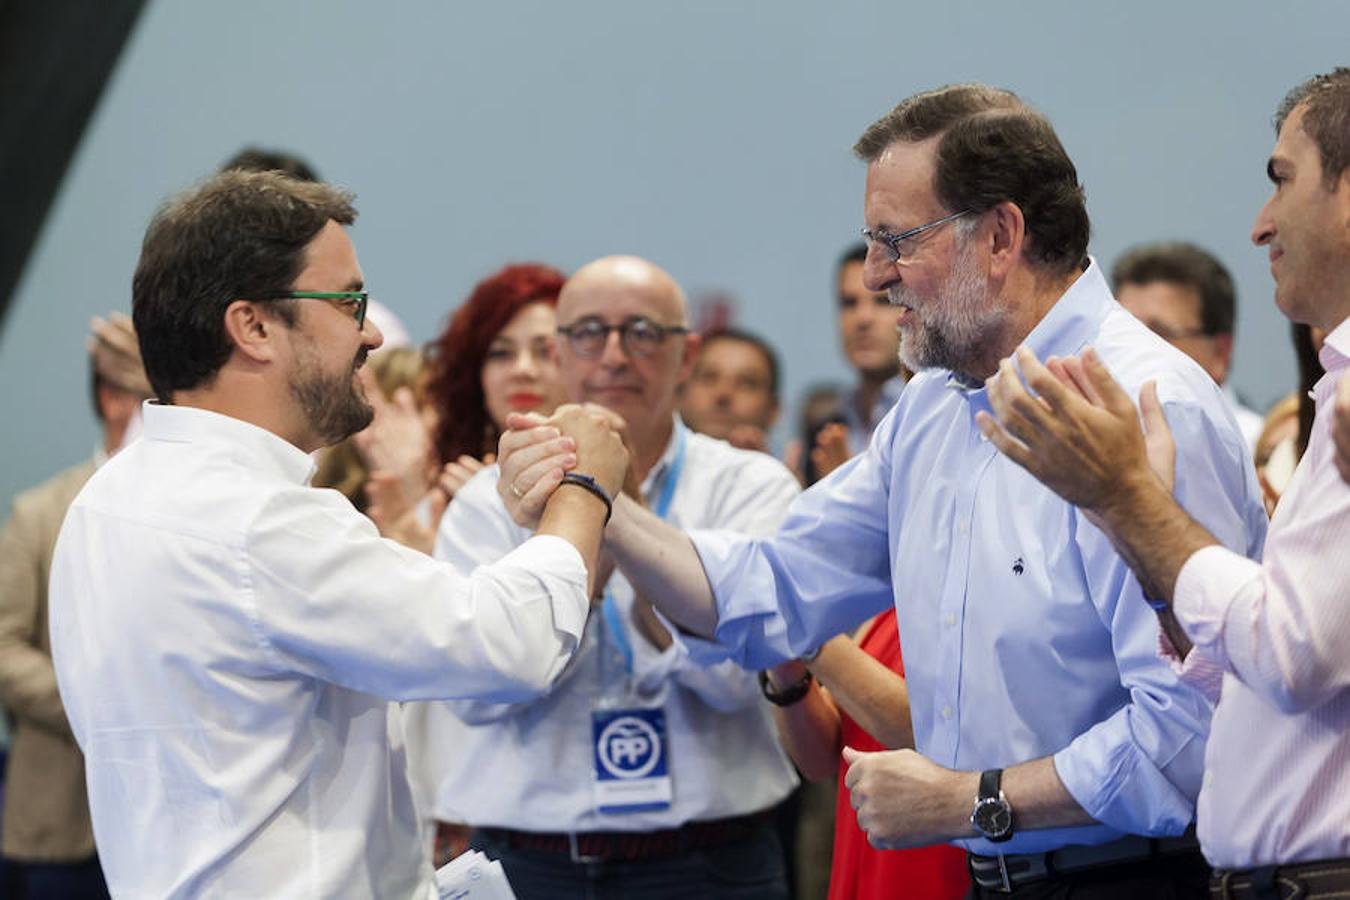 El candidato del Partido Popular saluda al secretario autonómico del Partido Popular en Canarias, Asier Antona